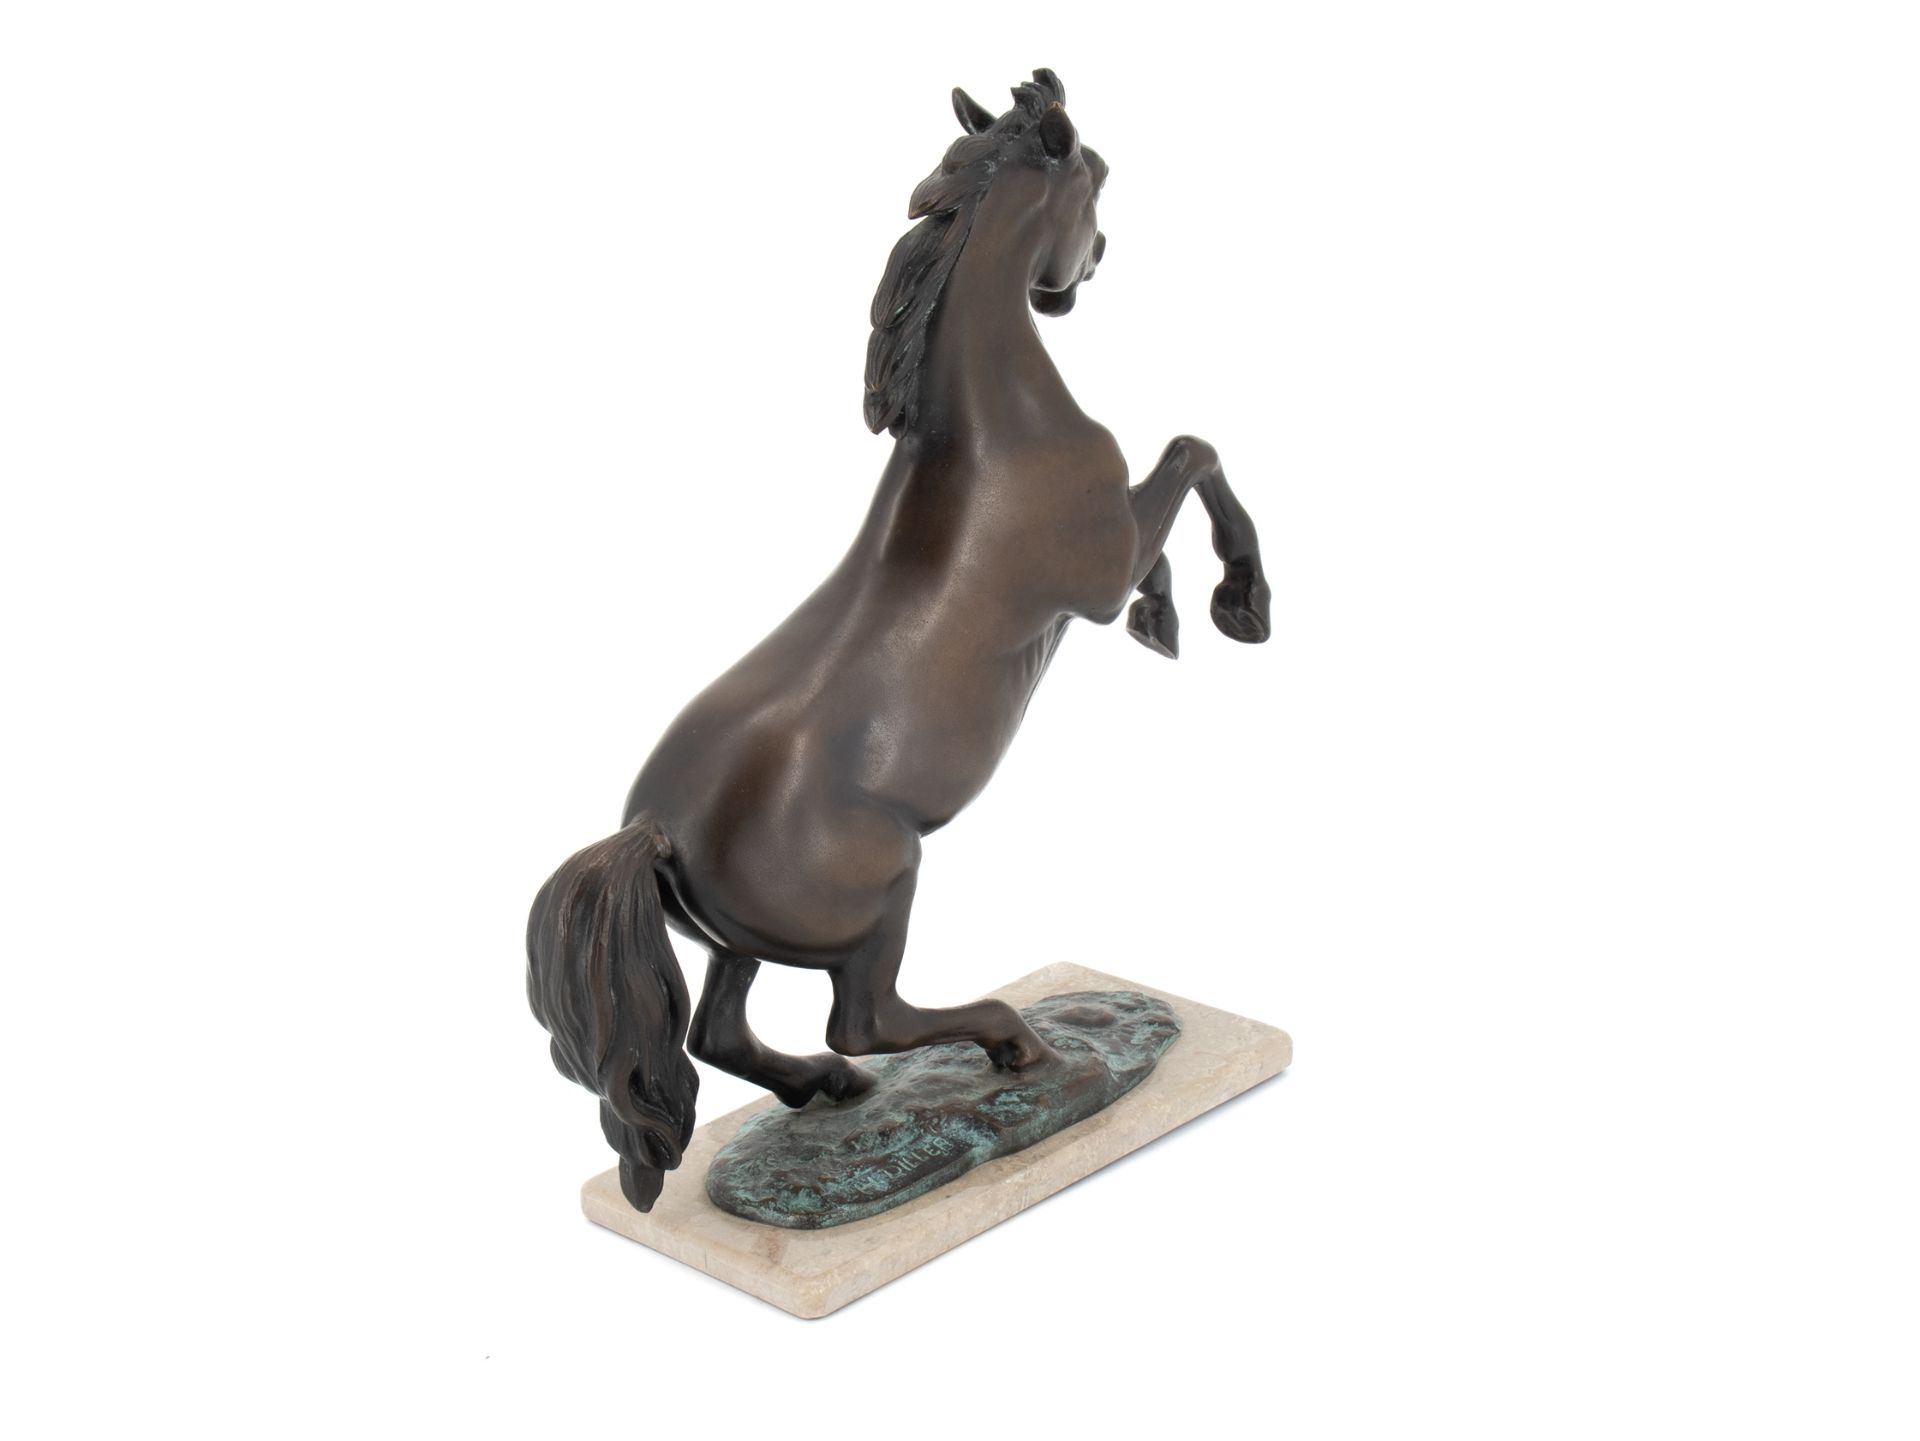 Diller Helmut (1911 - 1984), Bronzeskulptur "Steigendes Pferd" - Bild 4 aus 9